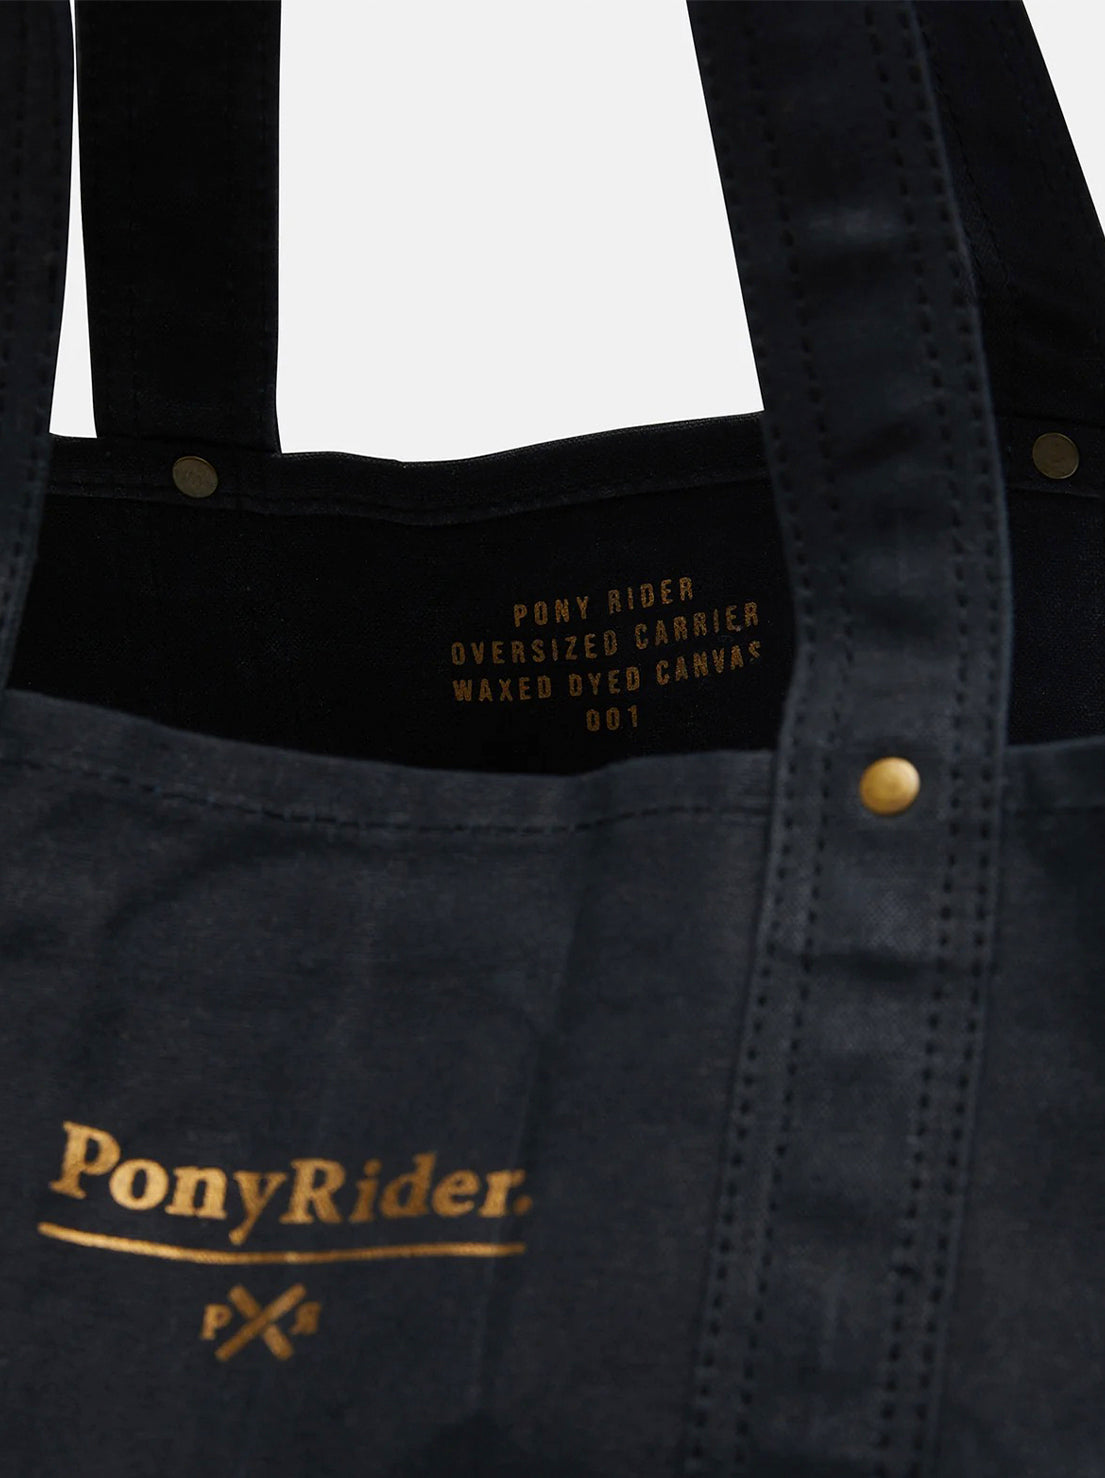 Pony Rider - Market Canvas Tote Bag - Black